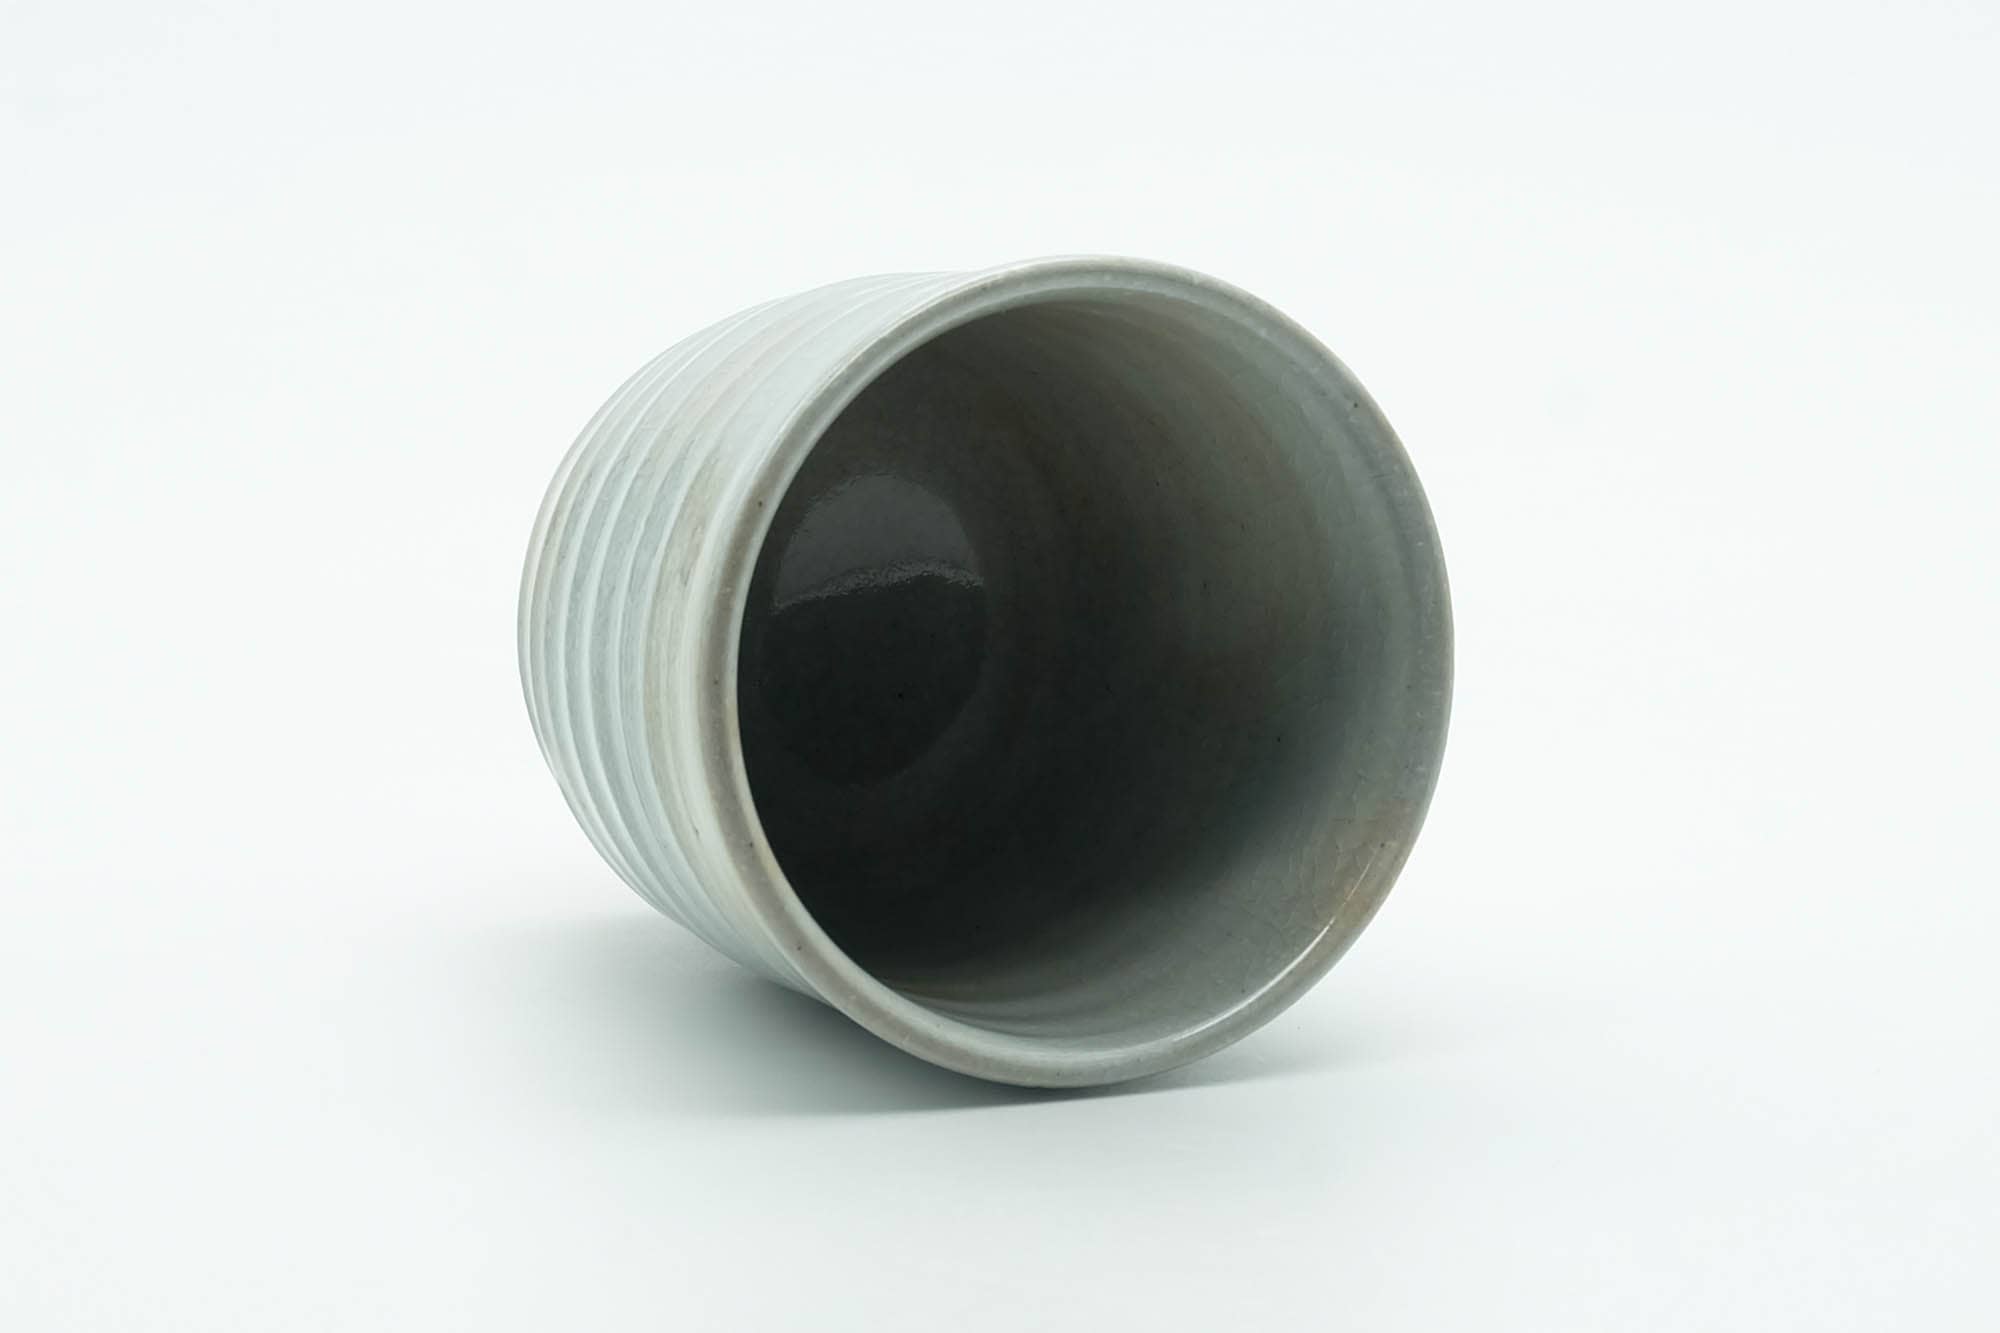 Japanese Teacup - Grey Glazed Spiraling Yunomi - 120ml